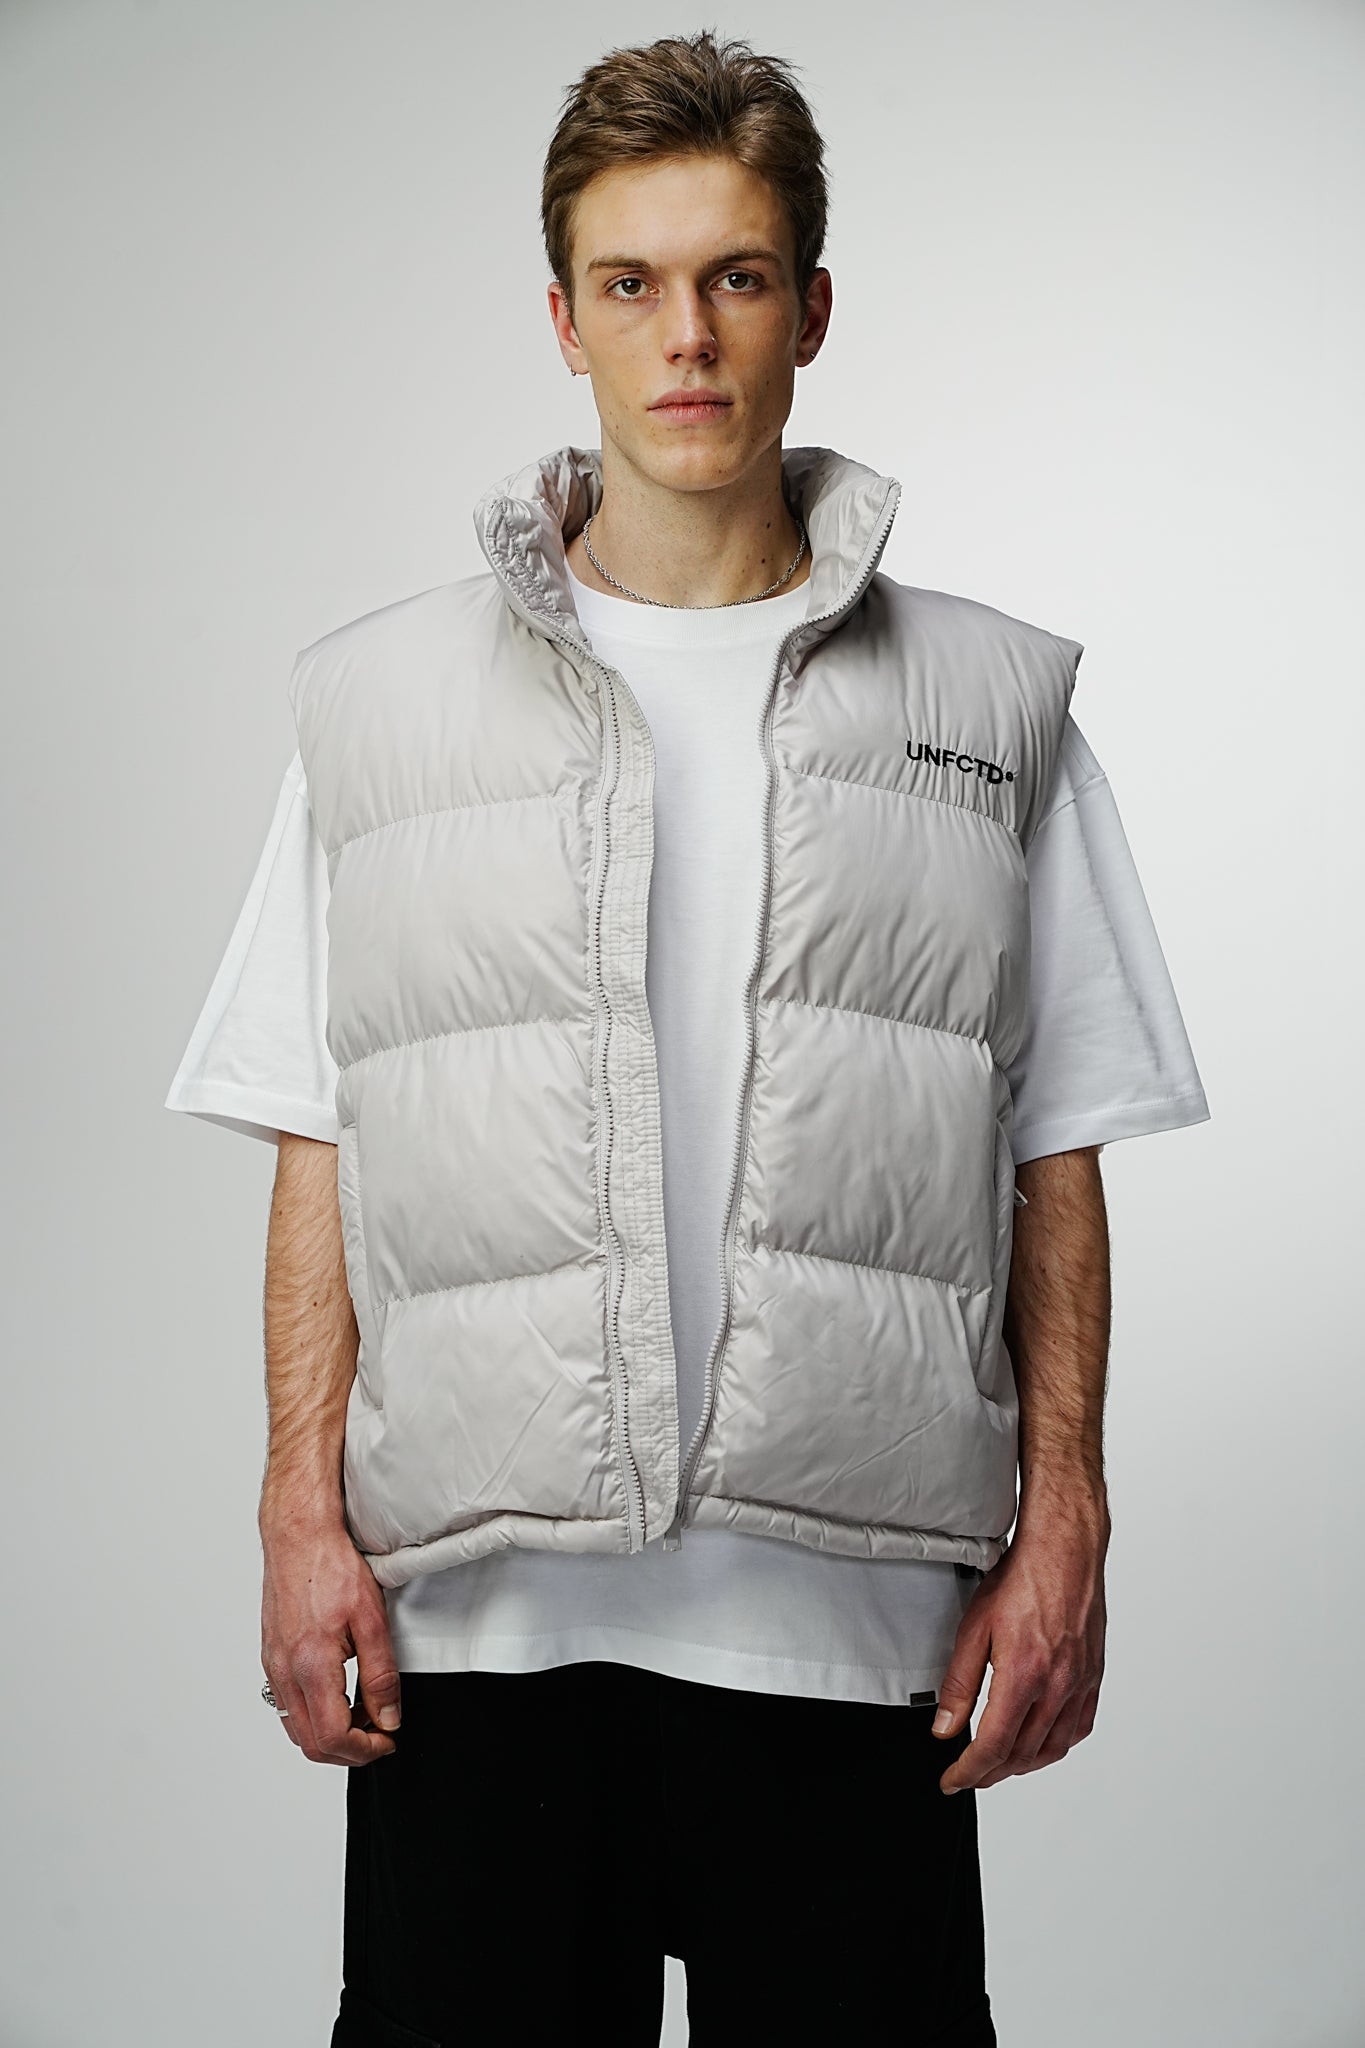 Airdrop Elite Puffer Vest - Ash Grey - UNEFFECTED STUDIOS® - Coats & Jackets - UNEFFECTED STUDIOS®